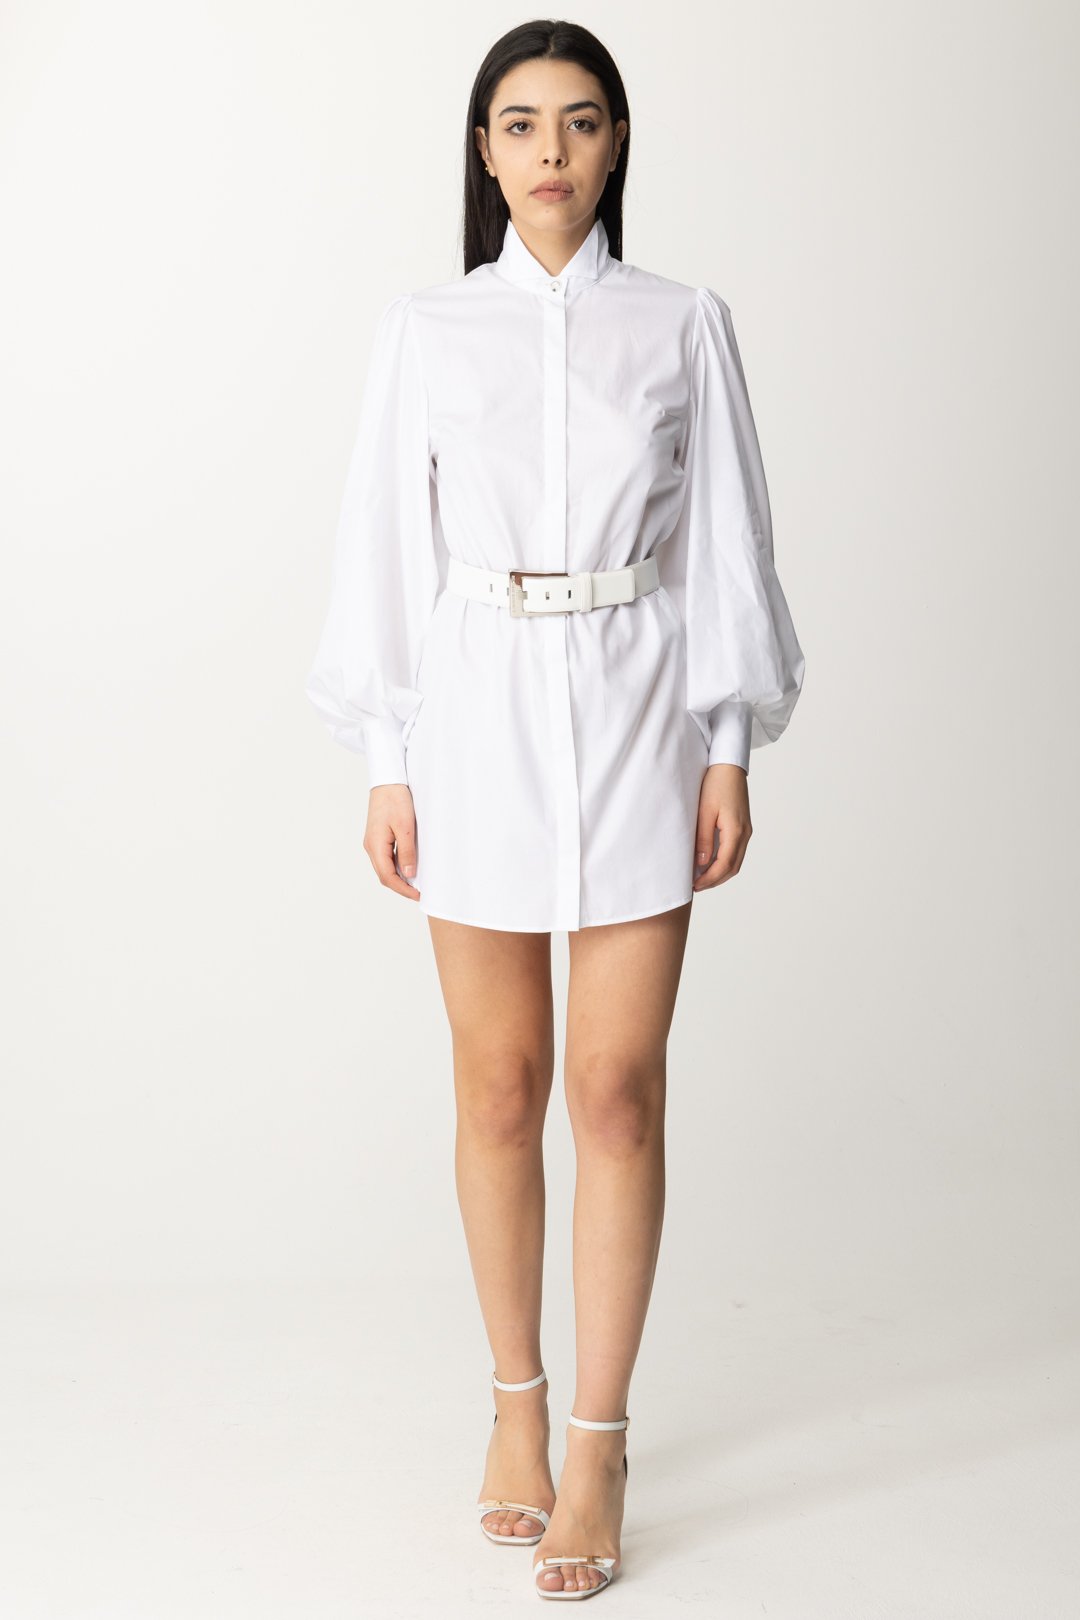 Vorschau: Elisabetta Franchi Minikleid im Hemdstil mit Gürtel Bianco